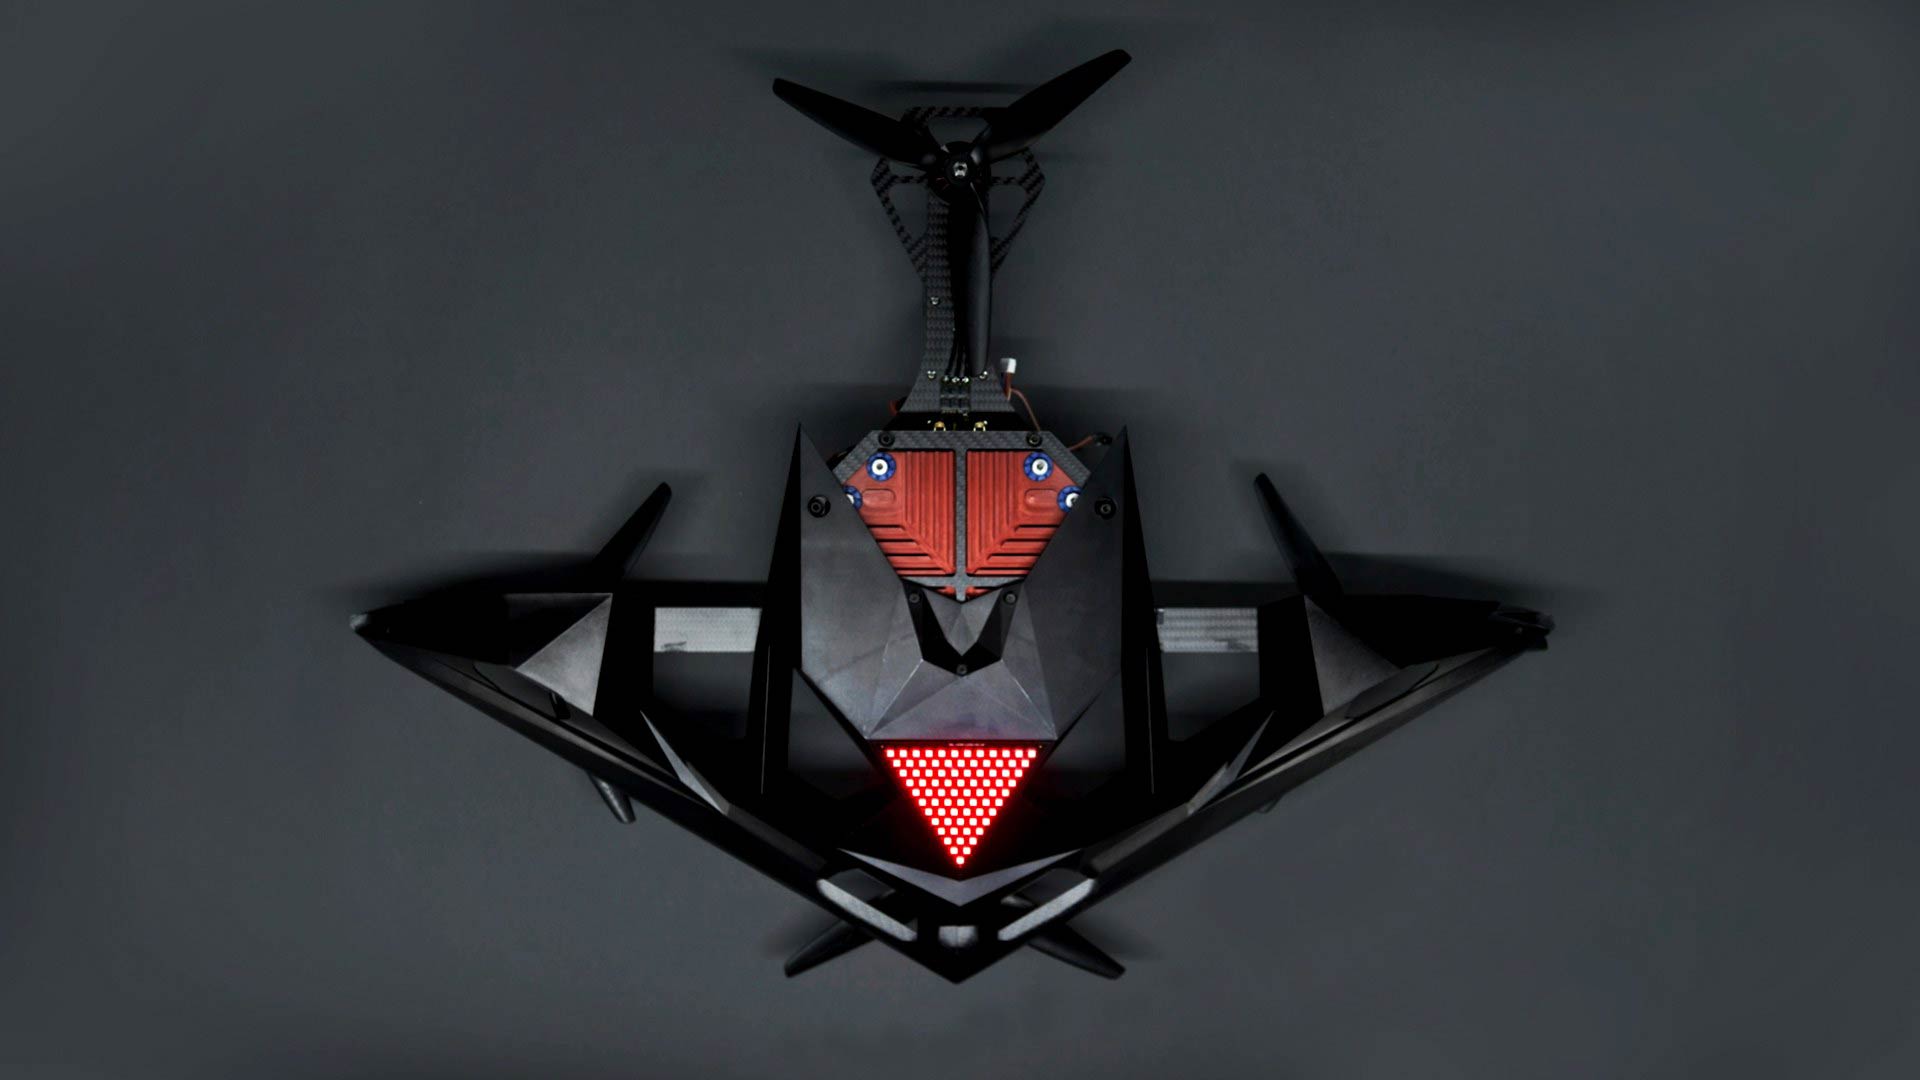 RacerAI drone